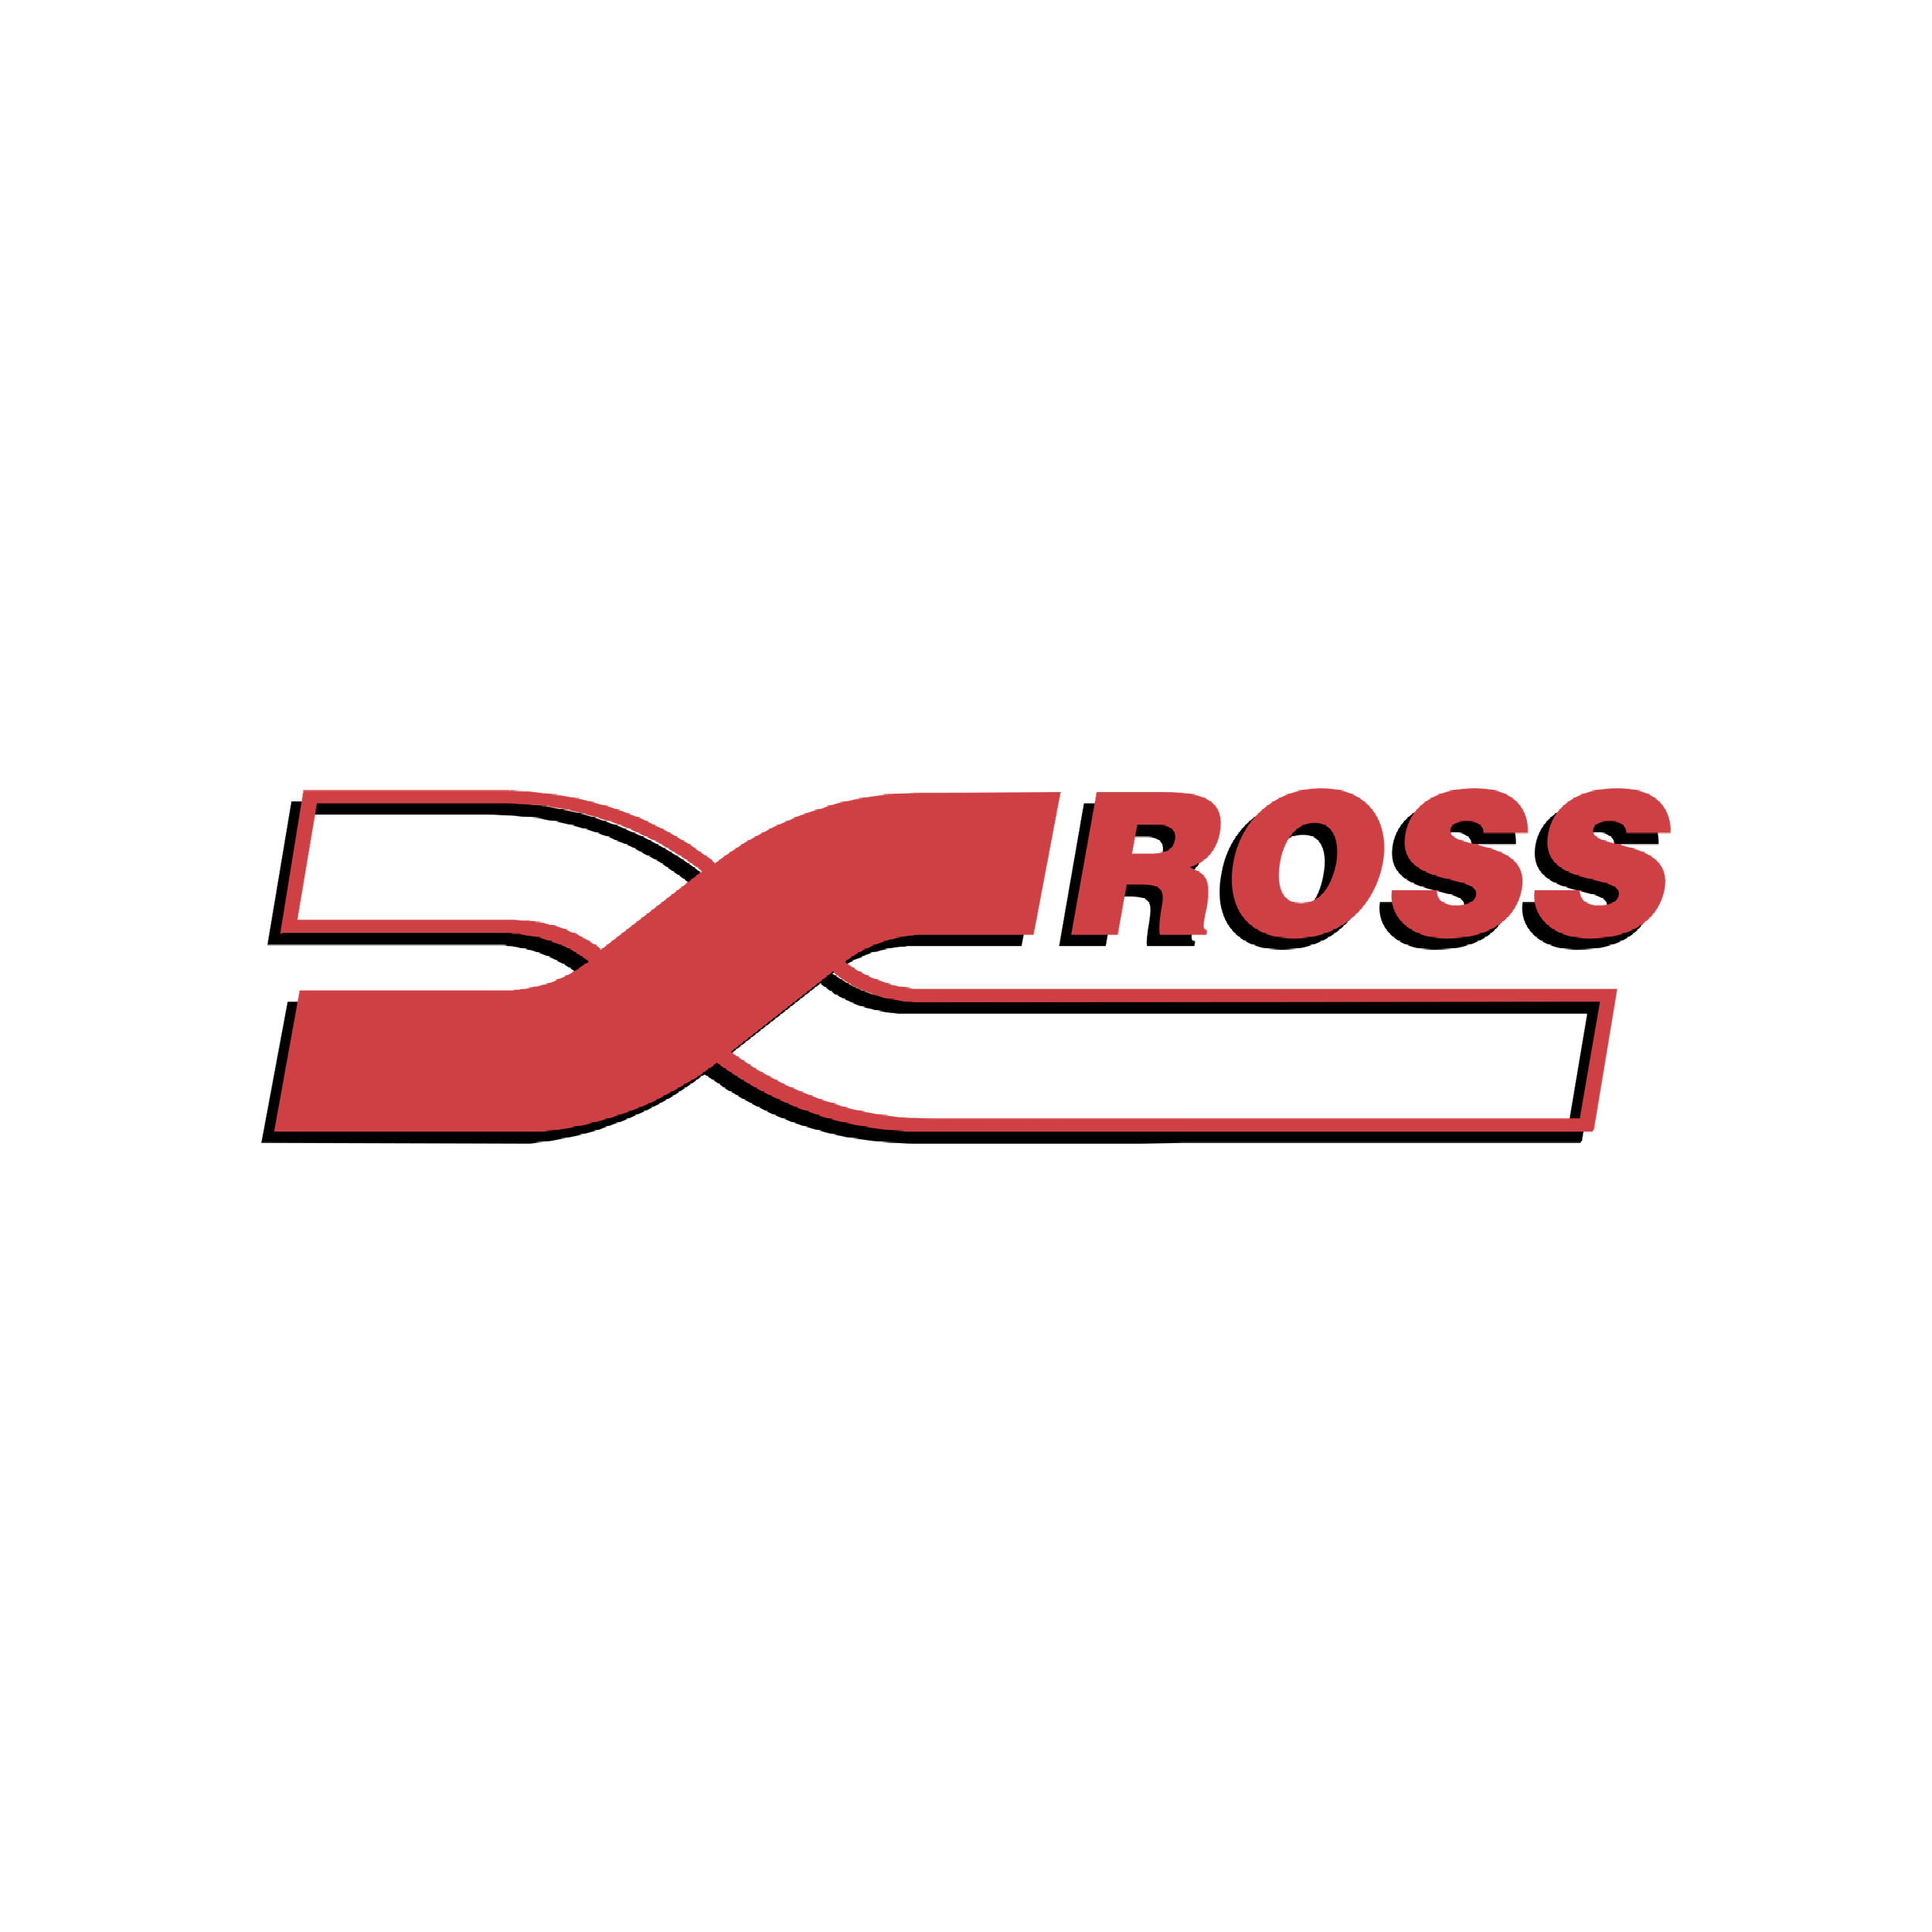 Logo de la marque référence Ross